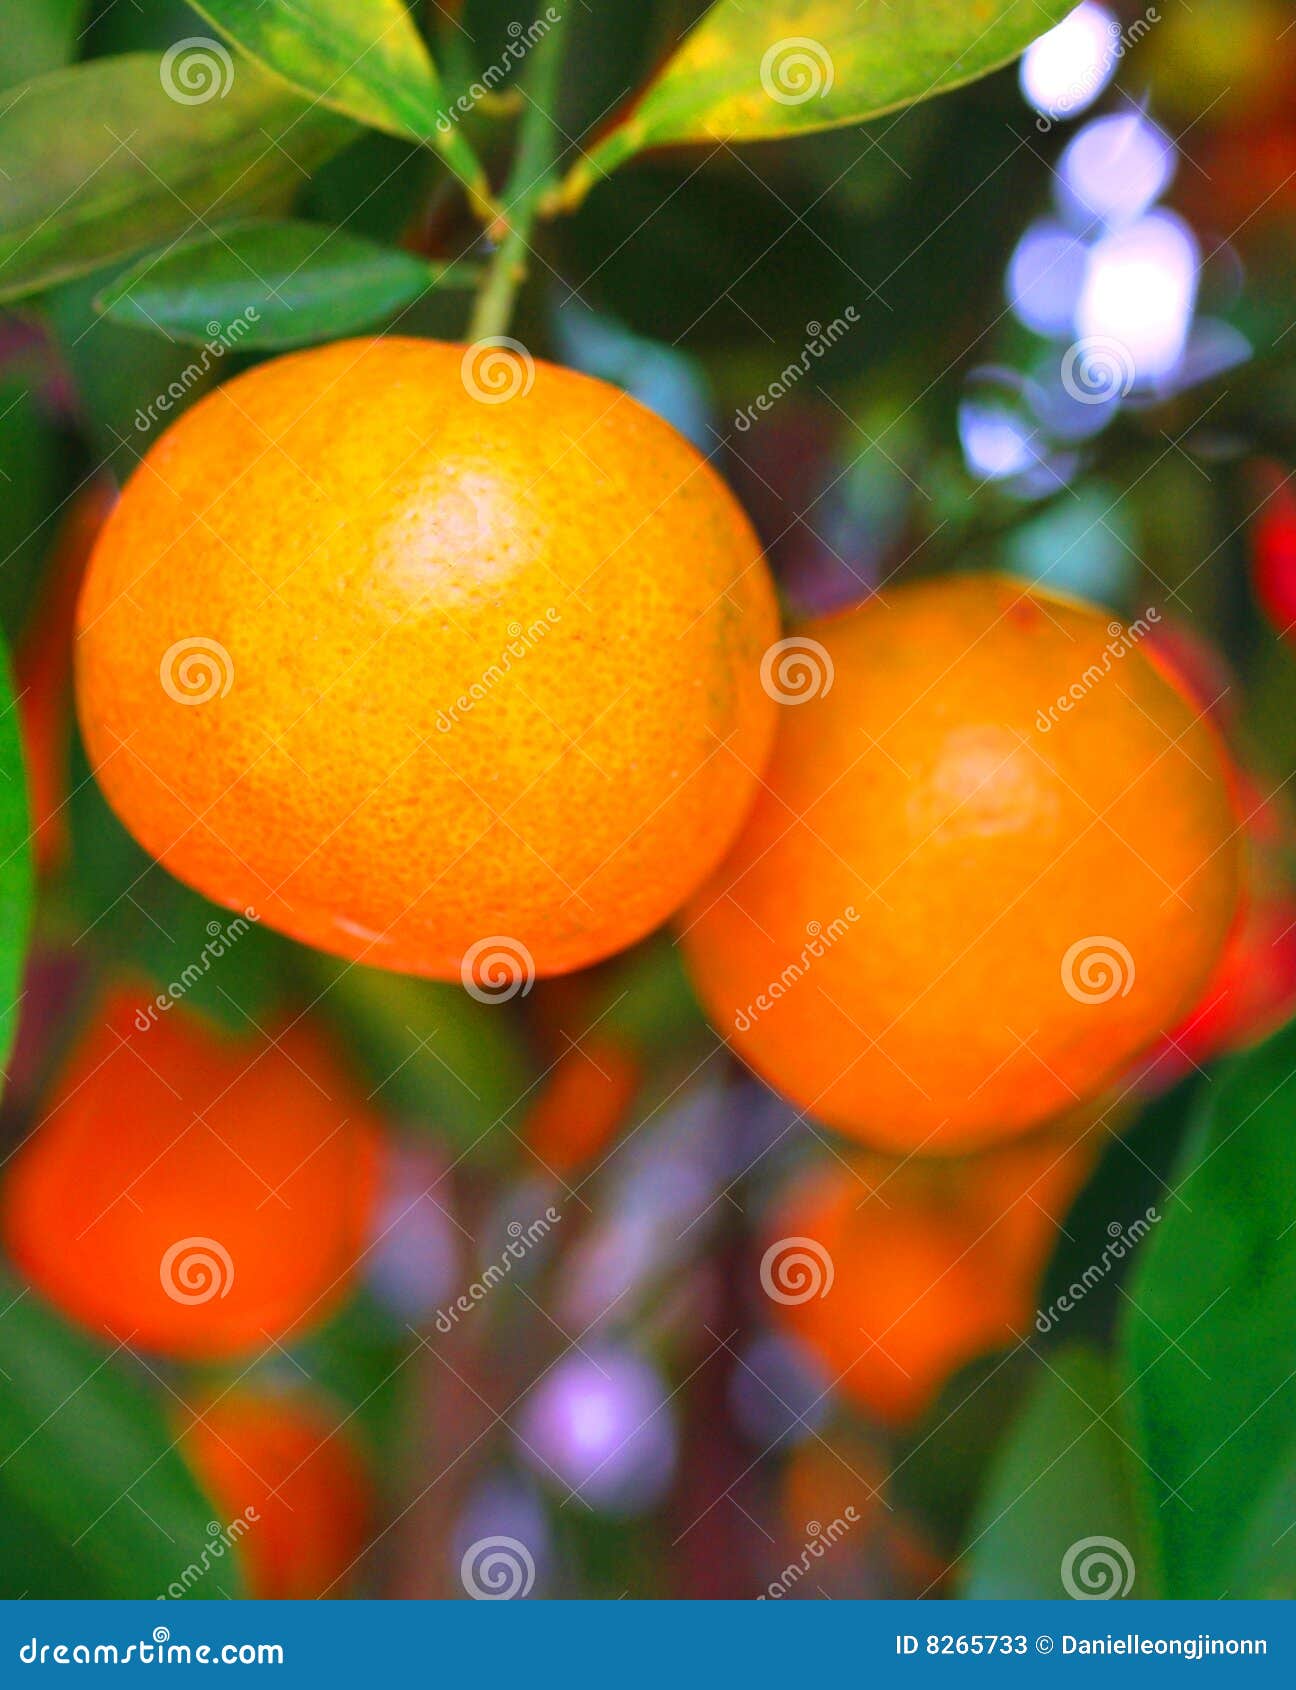 Chinesische Mandarinen. Dieses ist die Mandarinen, die auf einem Baum wachsen.